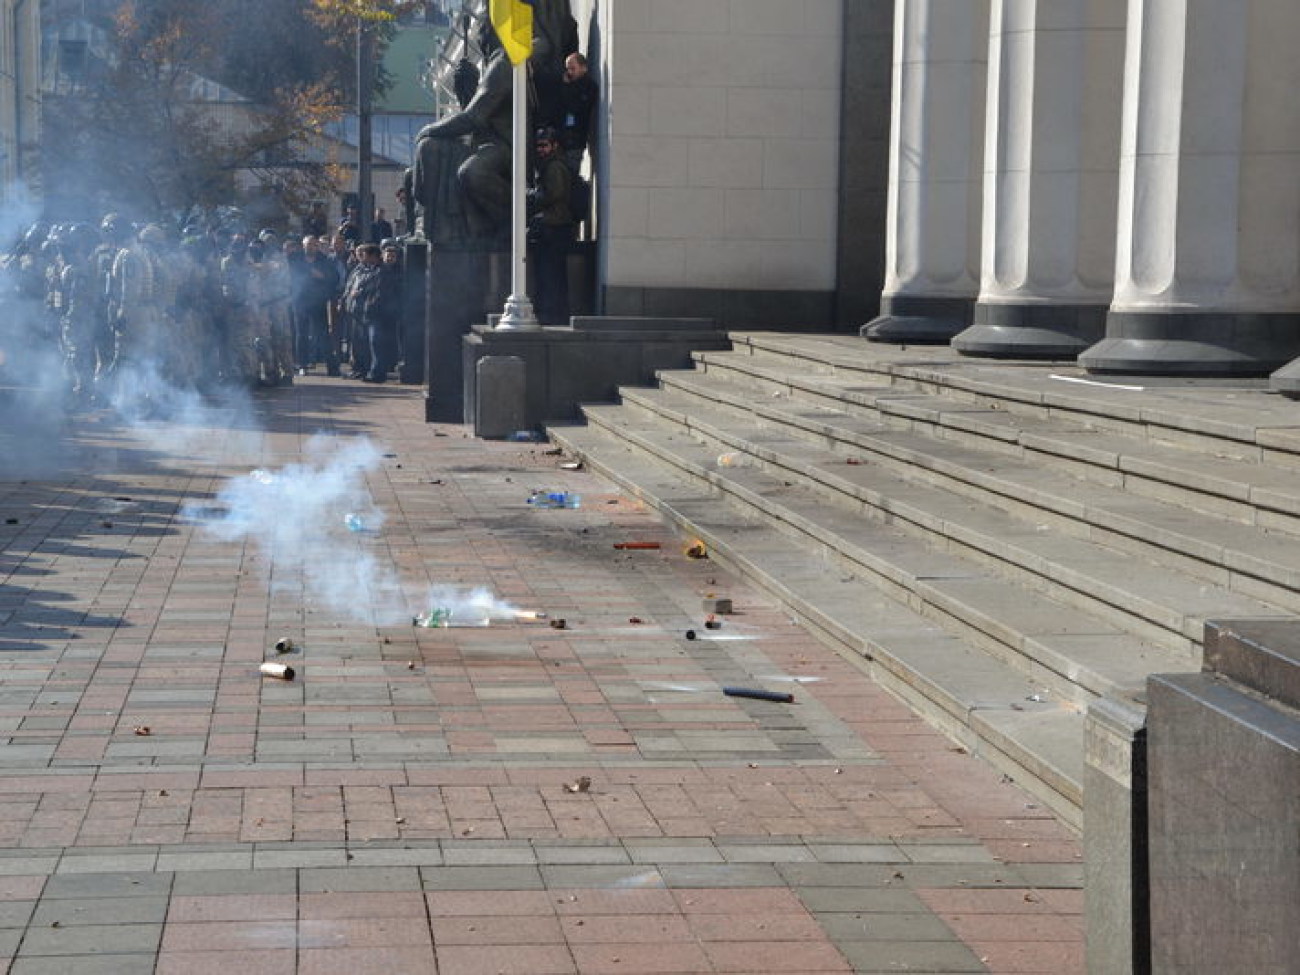 Огонь по депутатам: &#171;свободовцы&#187; штурмовали парламент, есть пострадавшие